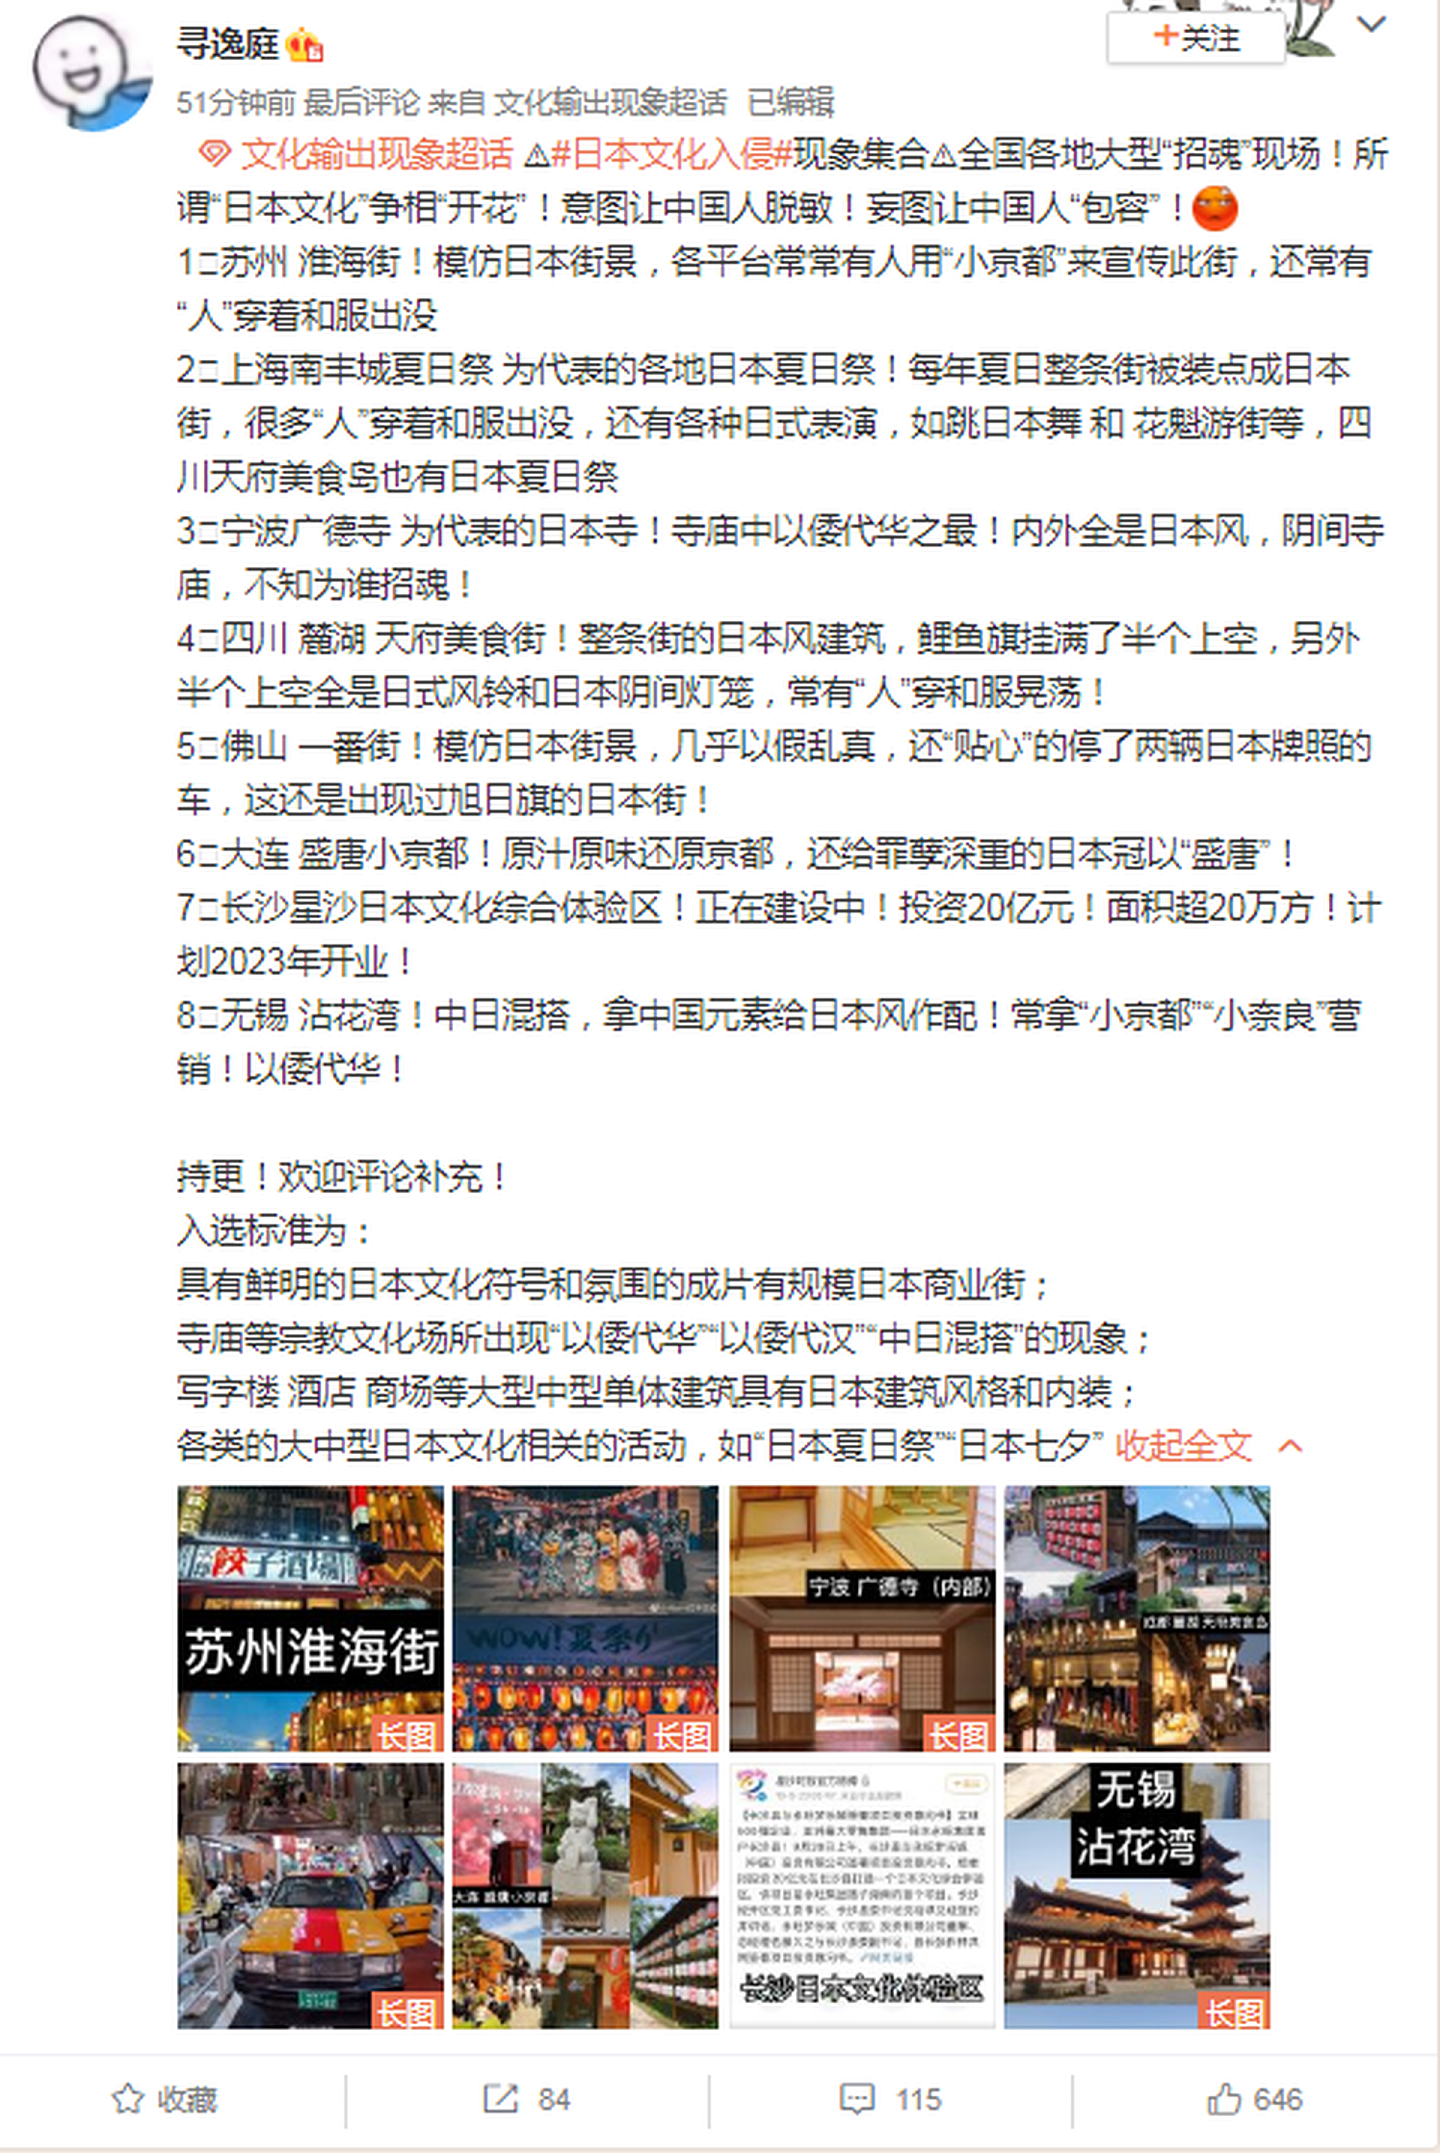 有中国网友罗列出在中国各地目前正开放的日本文化景点，批评这是日本文化的入侵。（微博@寻逸庭）